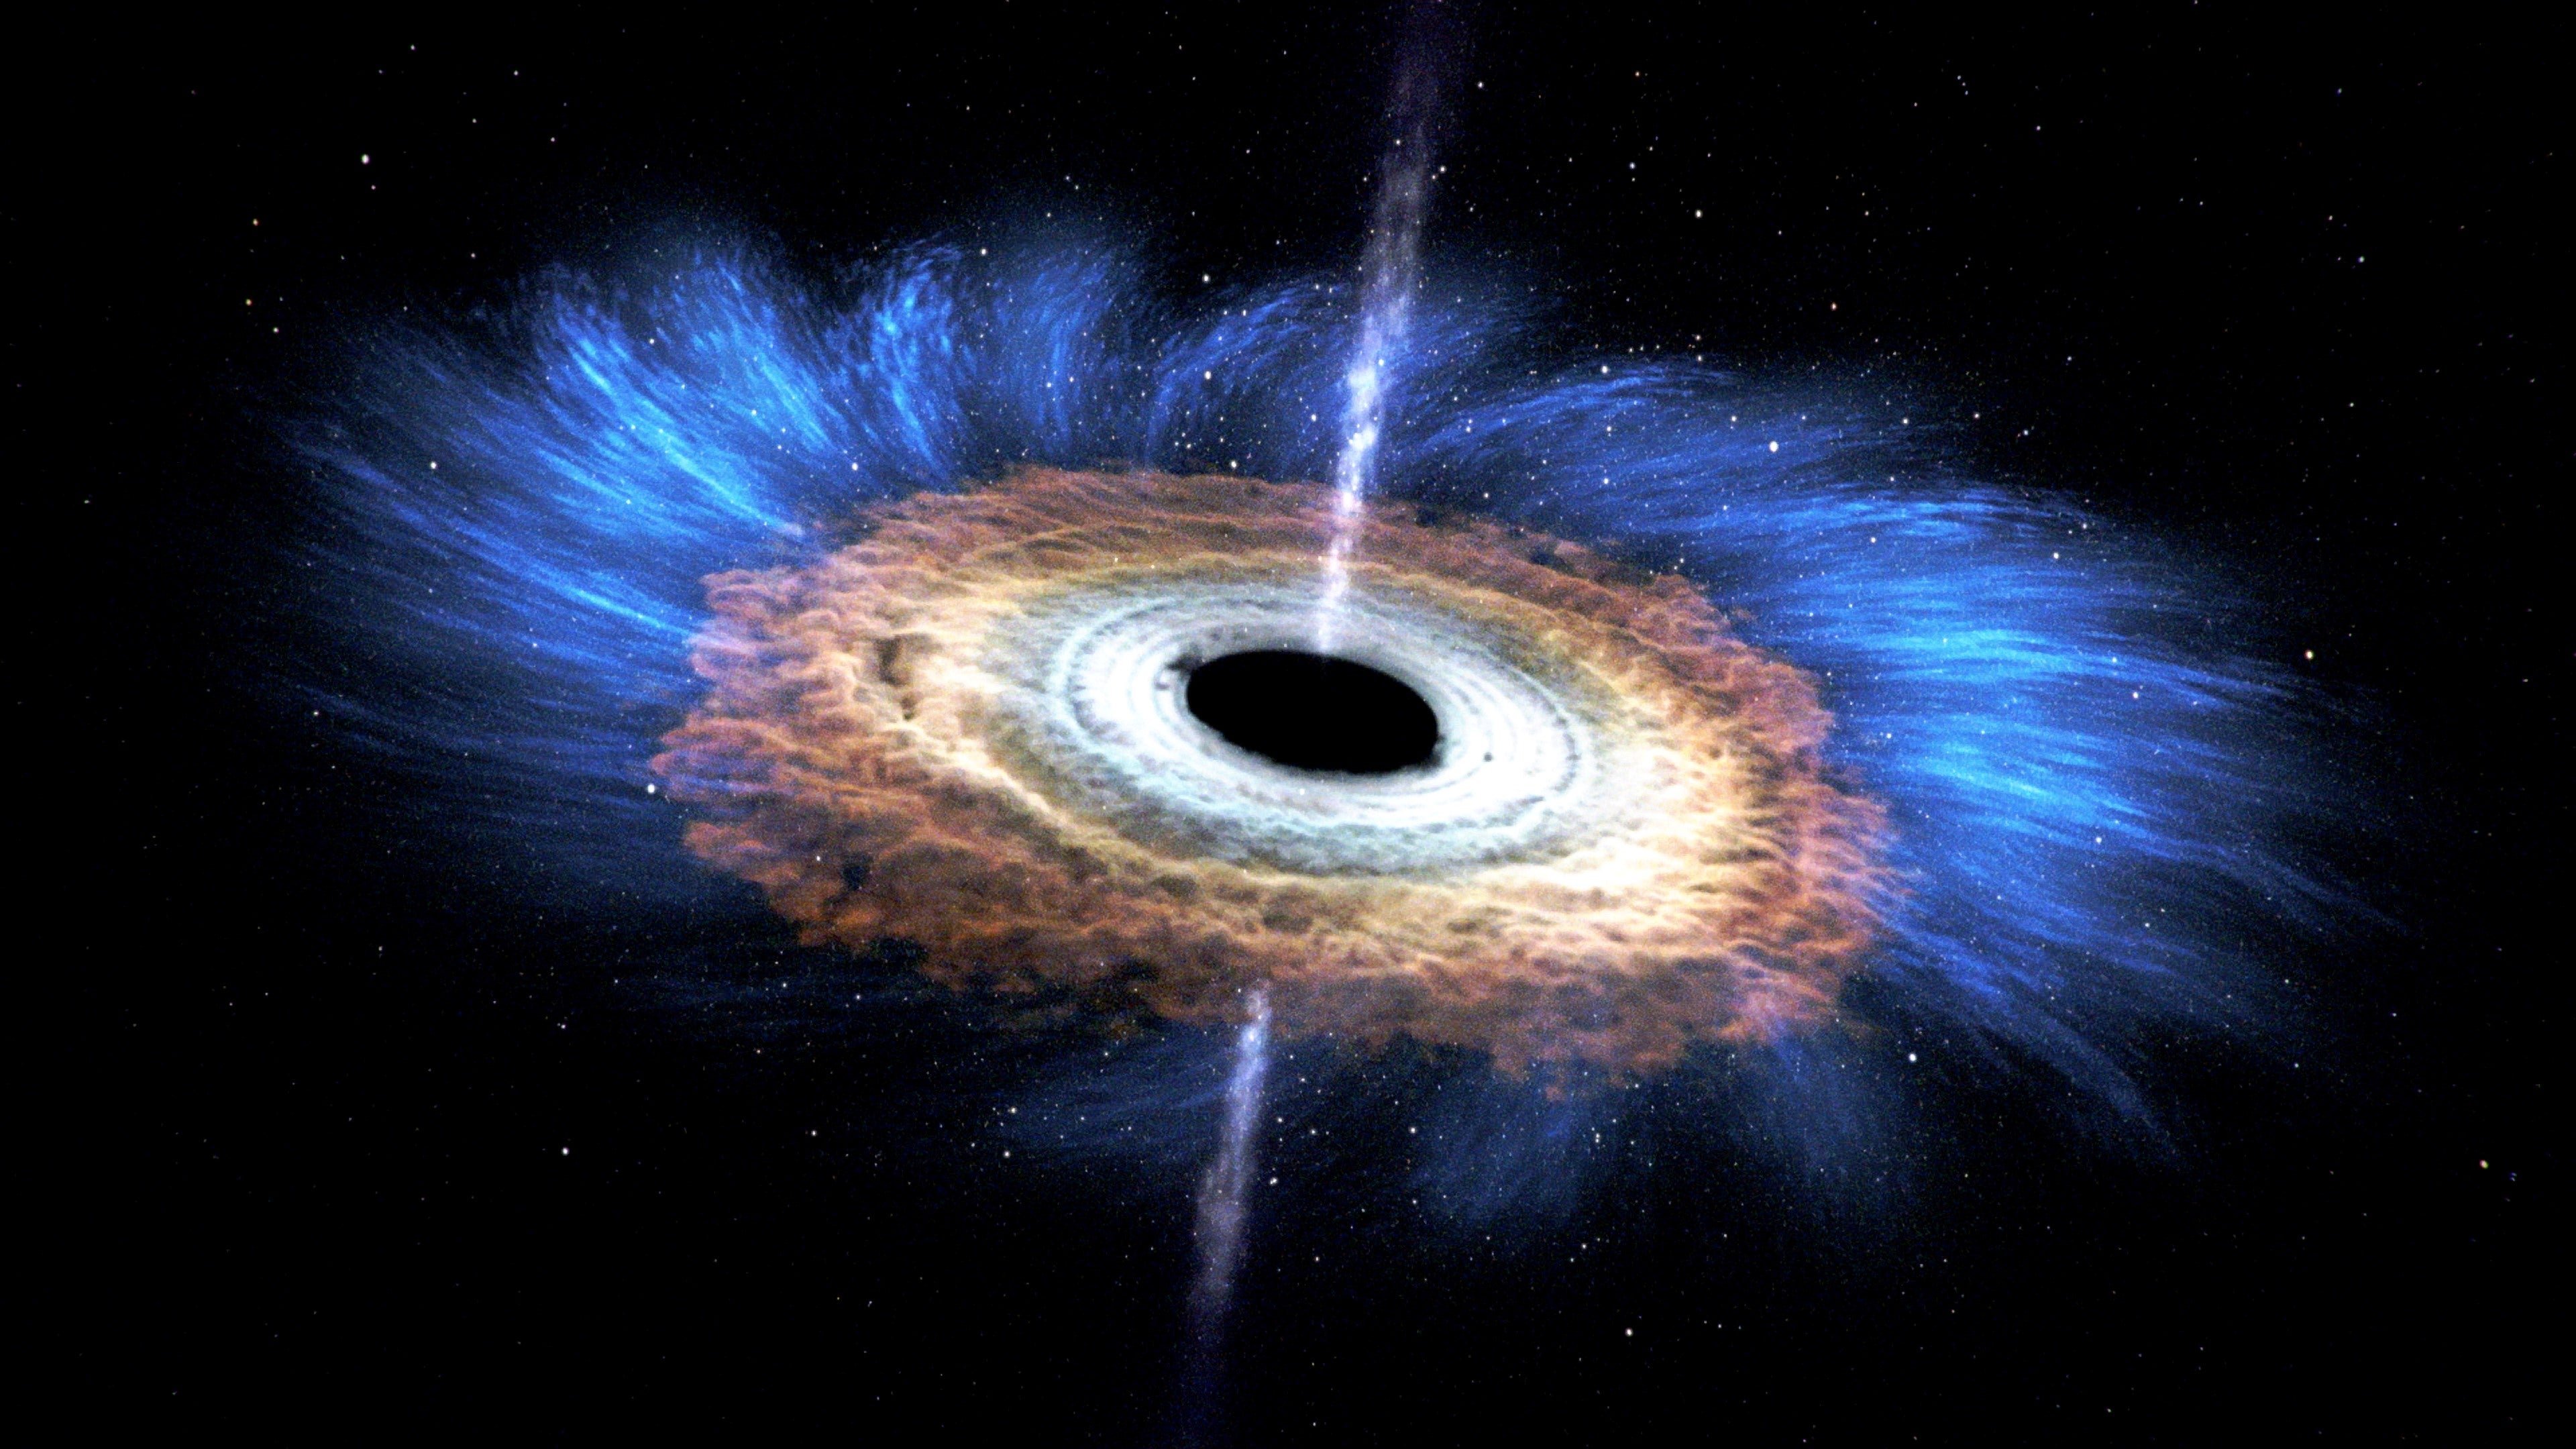 Evento sugere nascimento de buraco negro.